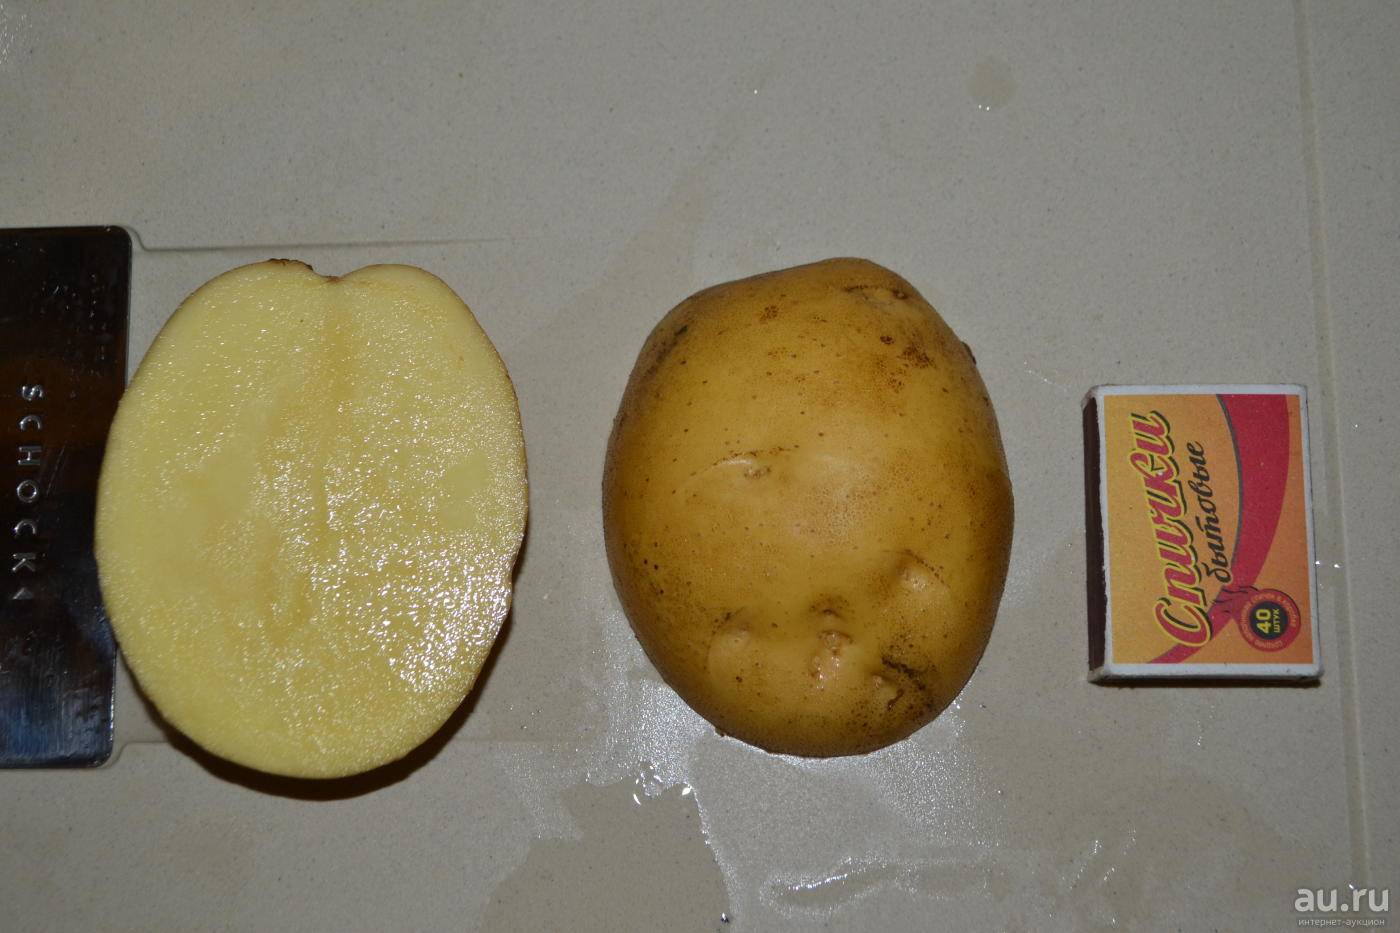 Картофель «латона»: характеристика, описание сорта, отзывы, фото, урожайность